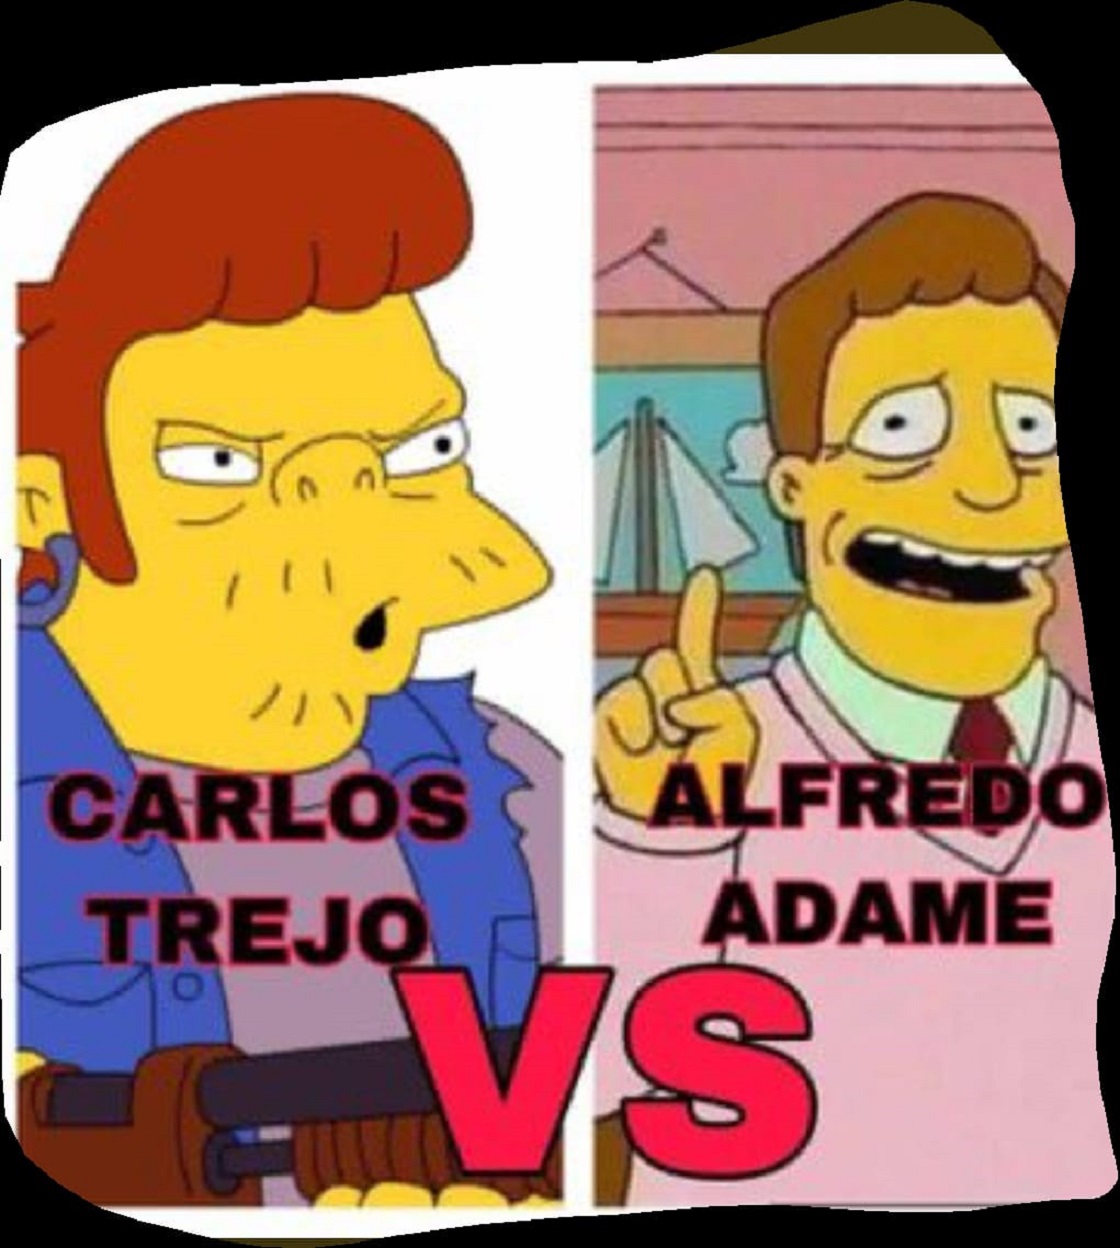 Carlos Trejo vs Alfredo Adame - Meme de Los Simpson